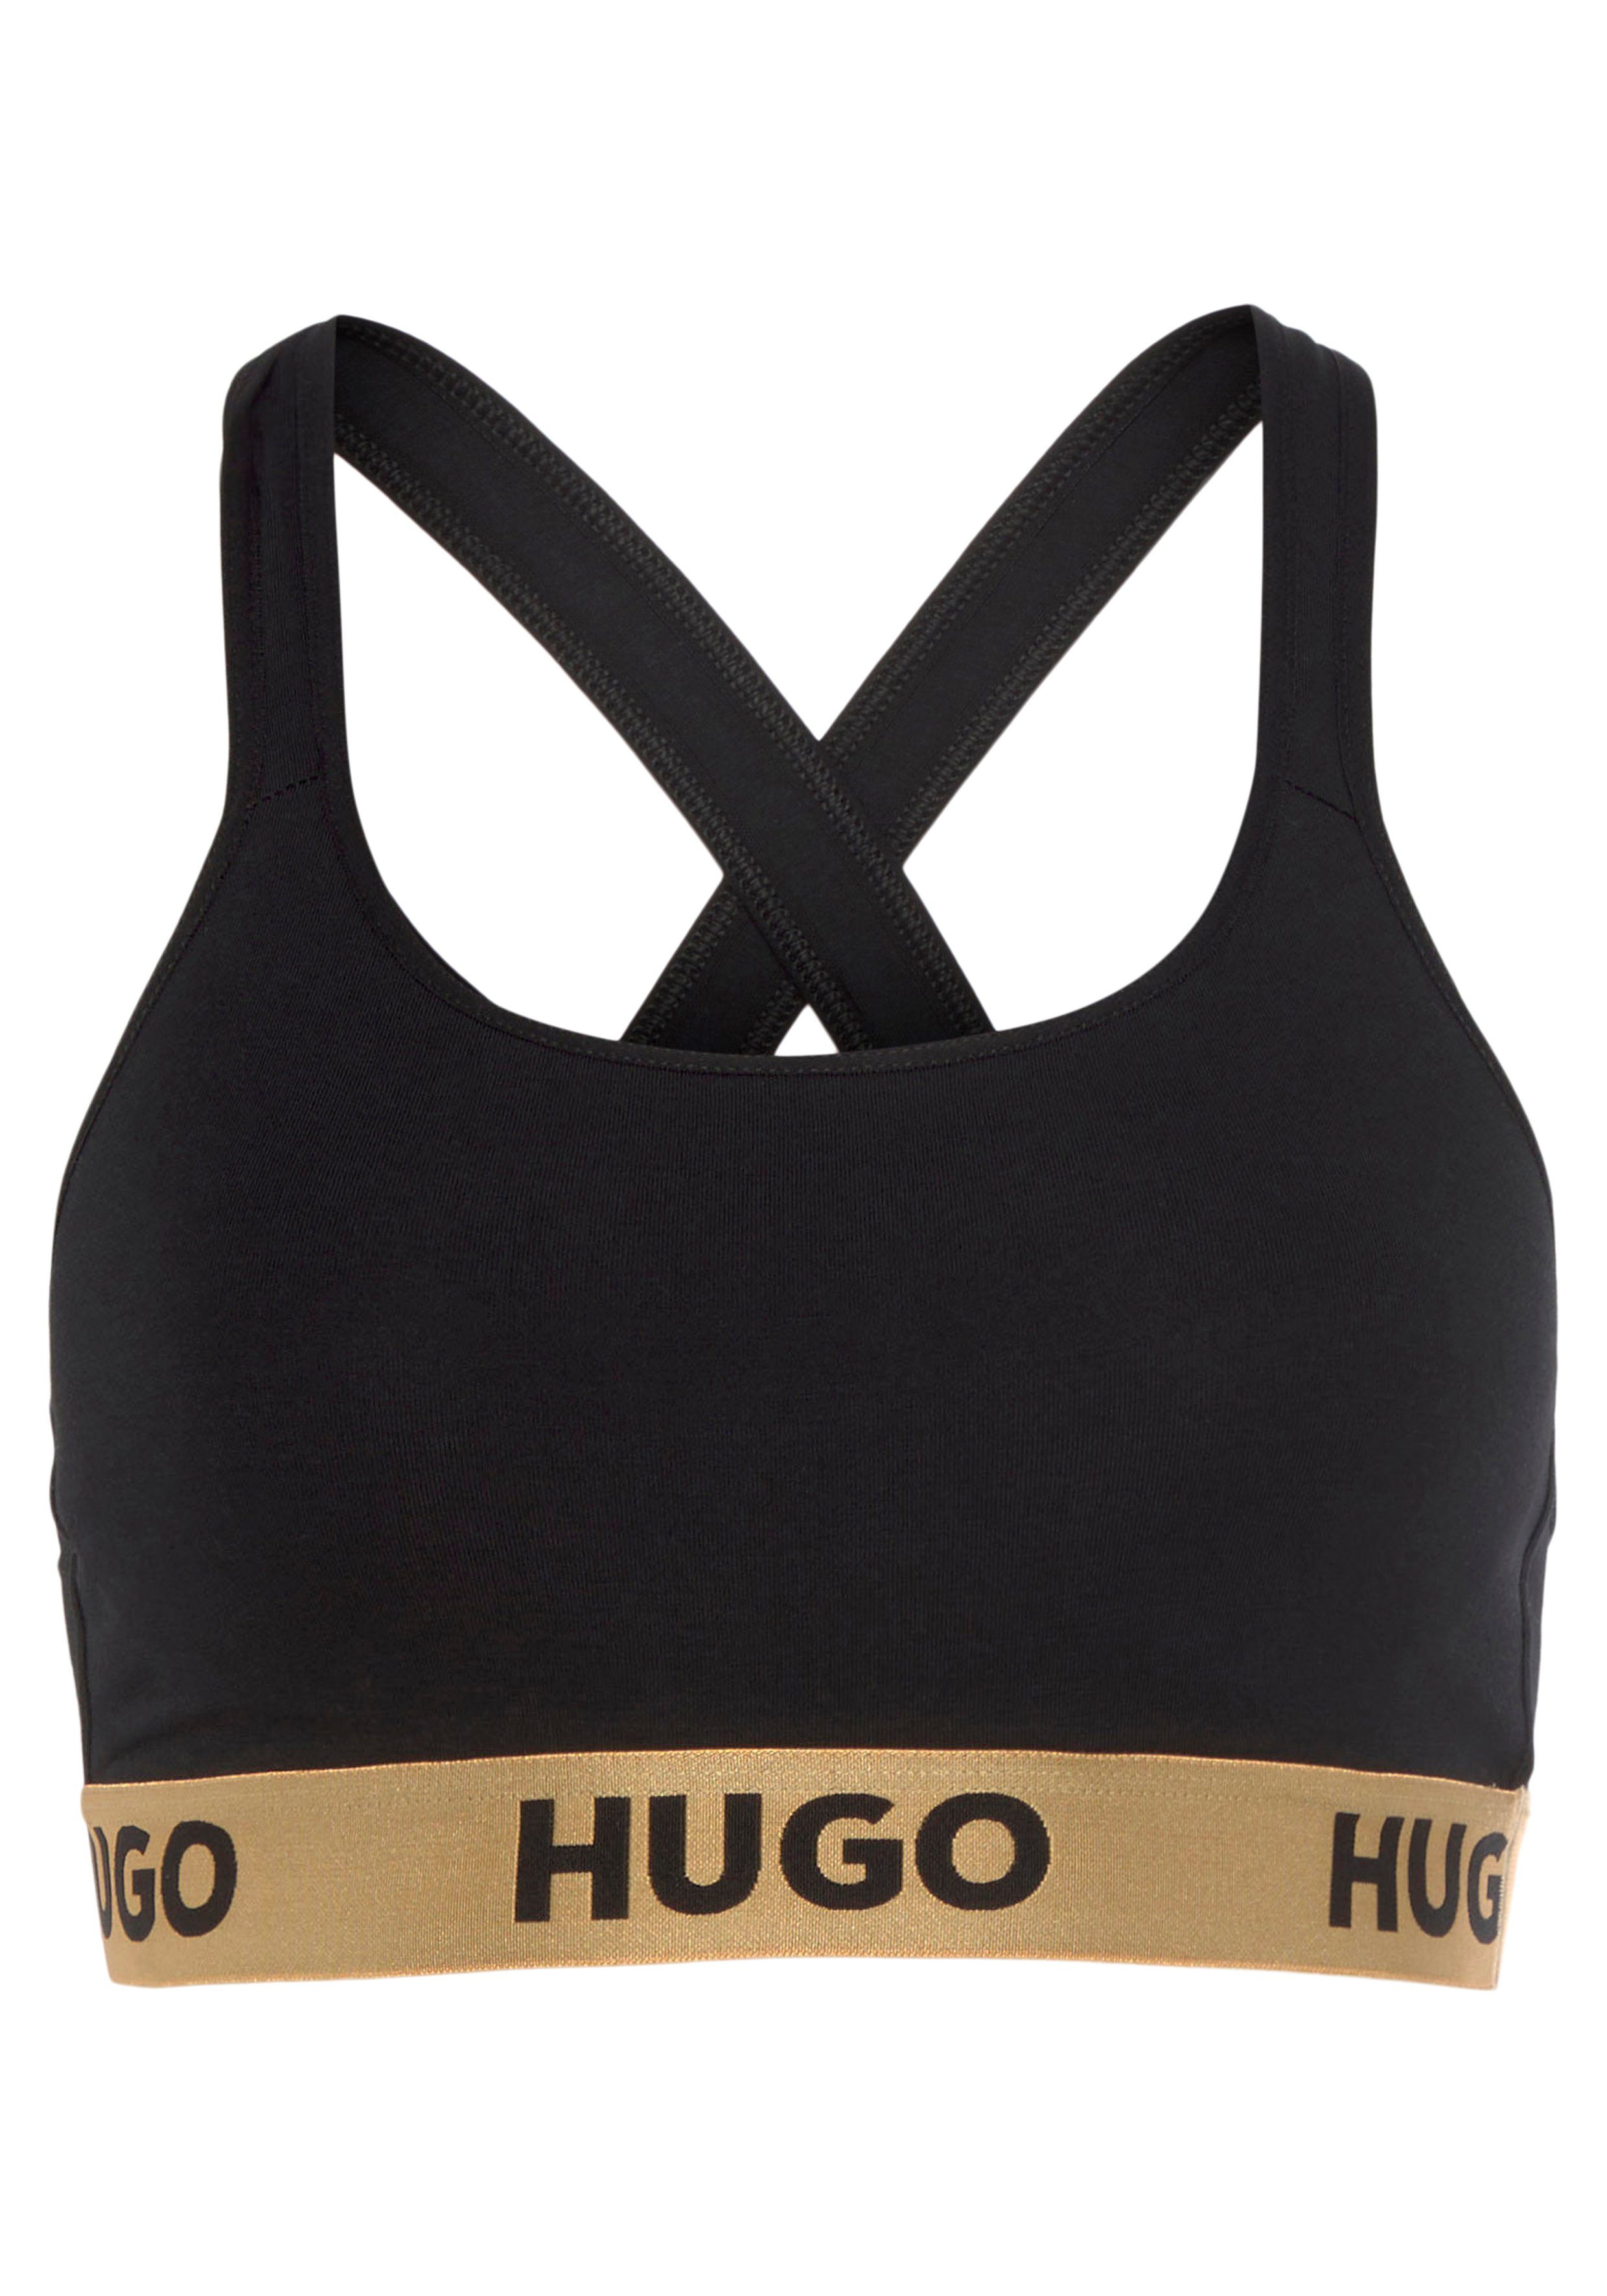 Bralette-BH HUGO Logo mit HUGO auf BRALETTE Bund Black003 PADDED SPOR dem